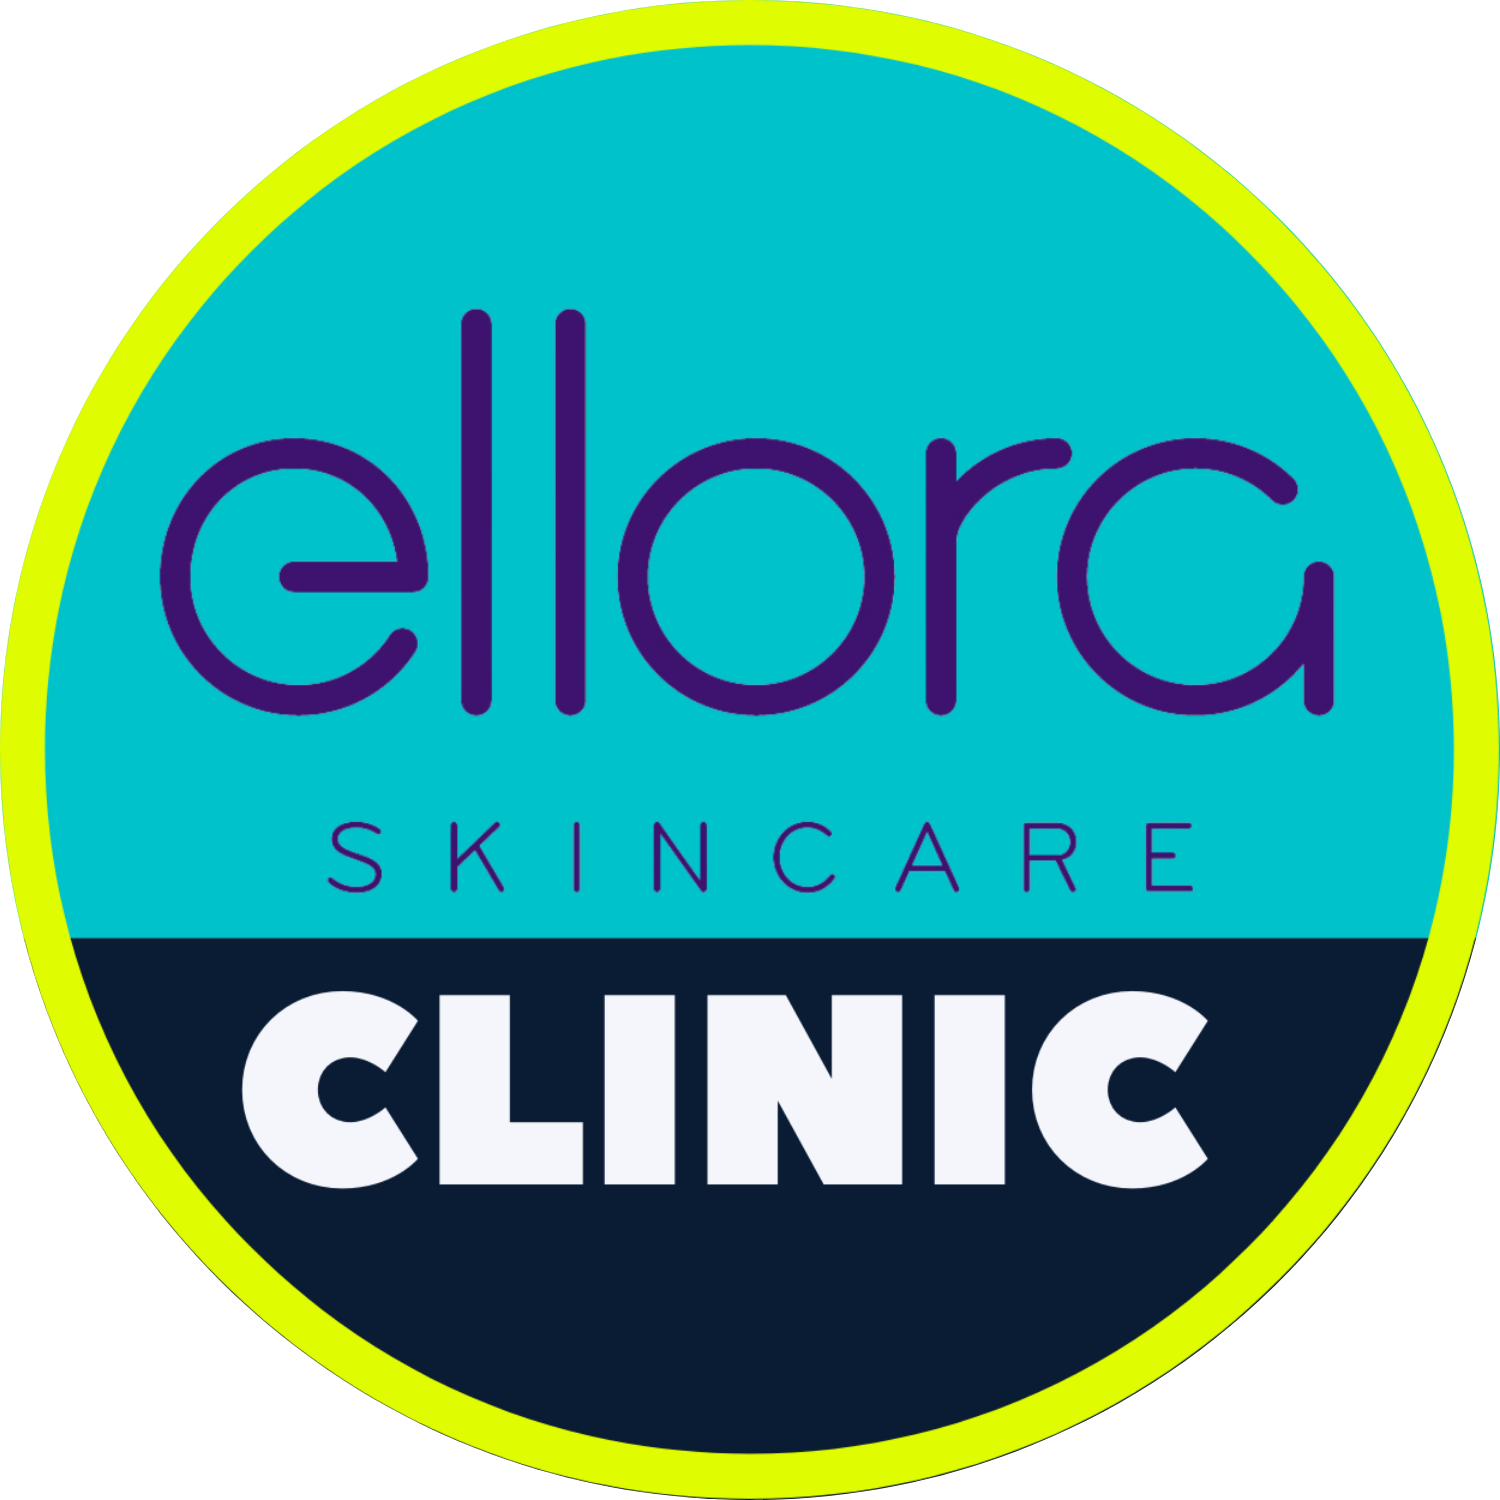 Ellora Skincare Clinic logo